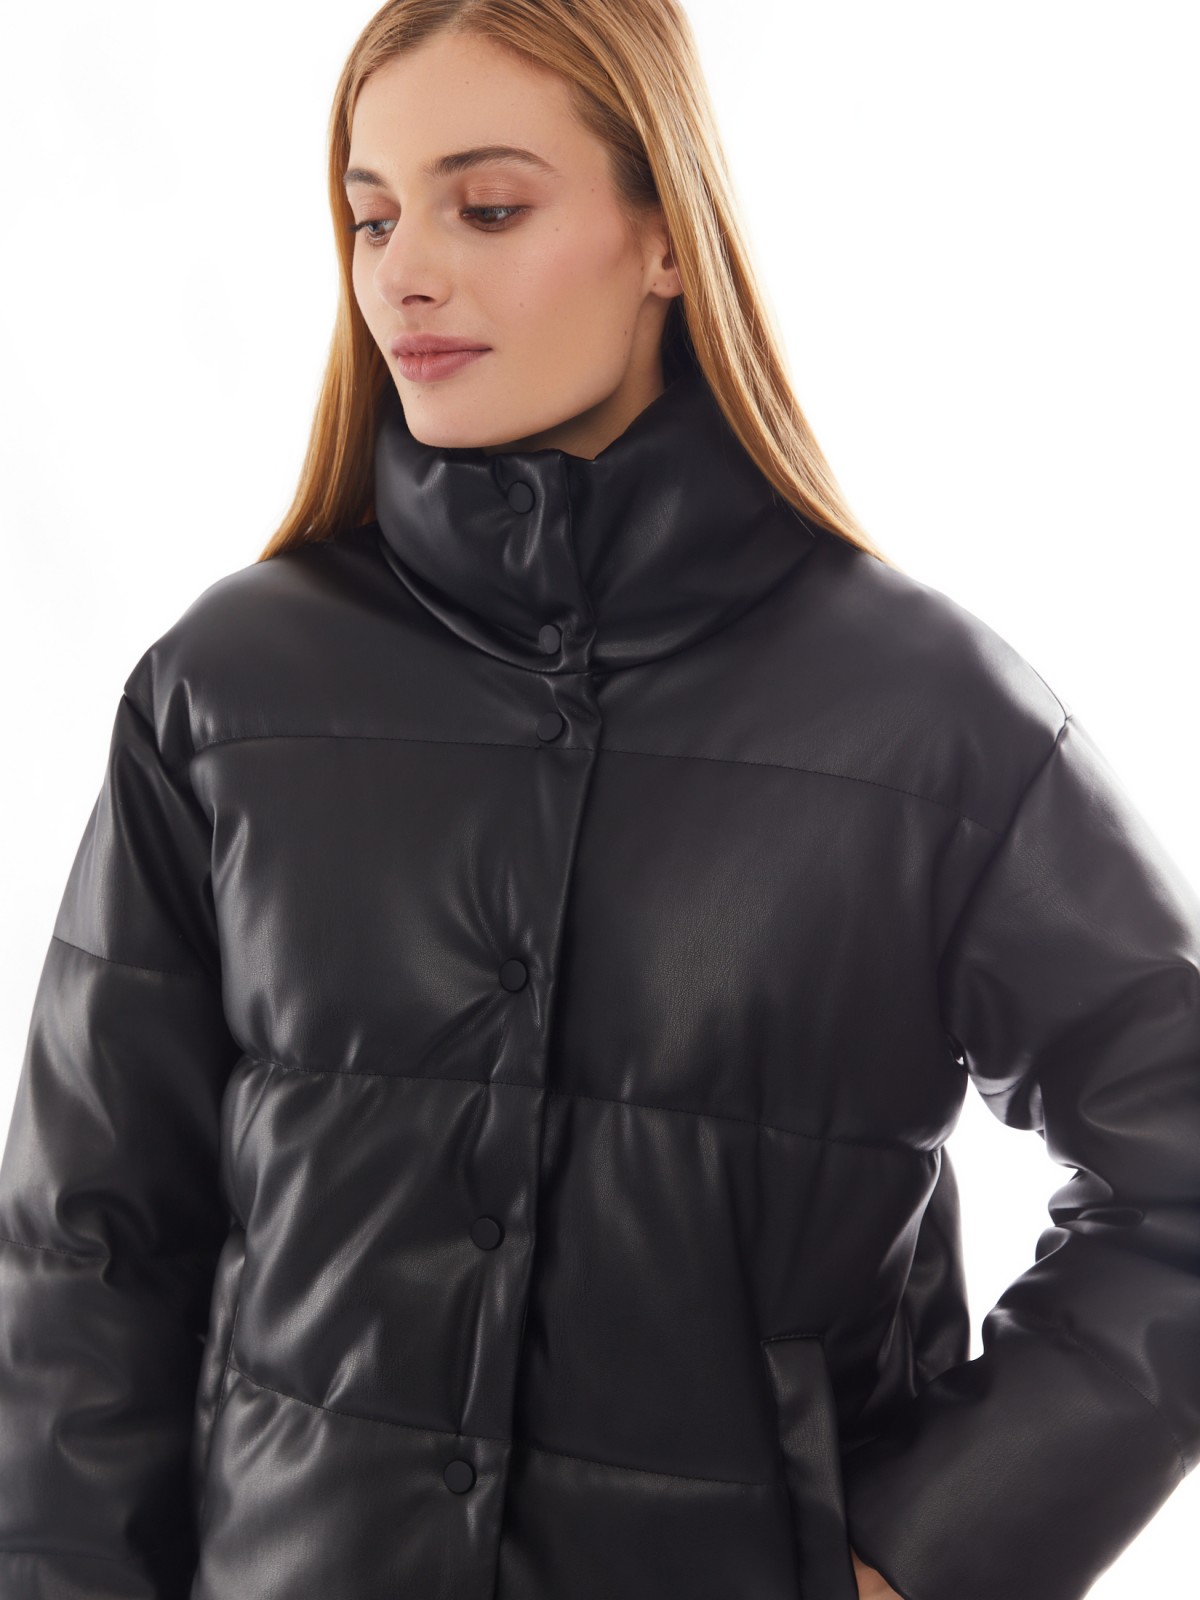 Тёплая стёганая дутая куртка из экокожи с высоким воротником zolla 02412516F034, цвет черный, размер XS - фото 4